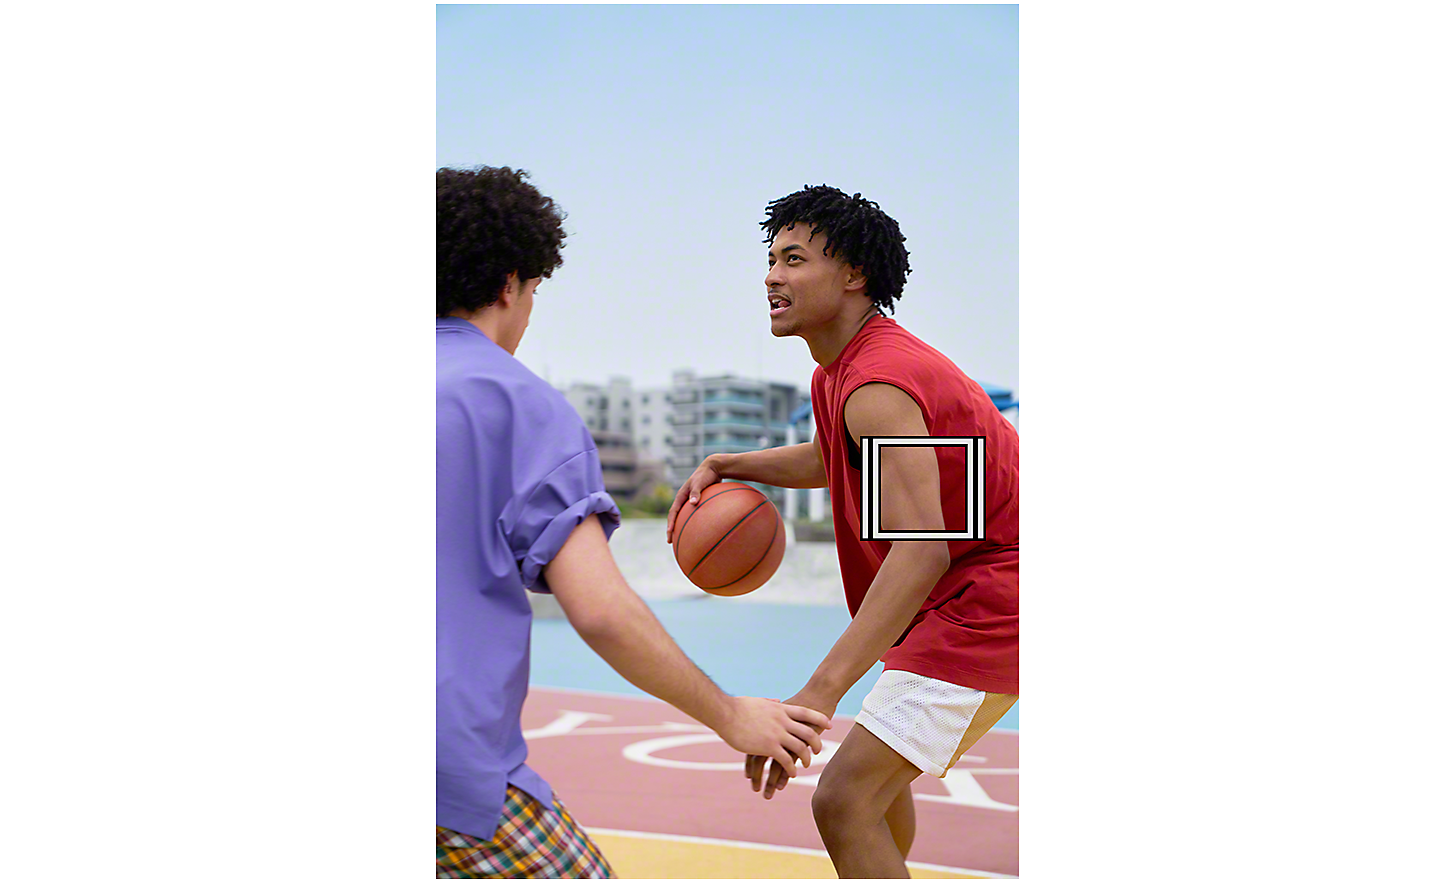 Deux hommes jouant au basket en extérieur, un carré blanc représentant le suivi d'objet